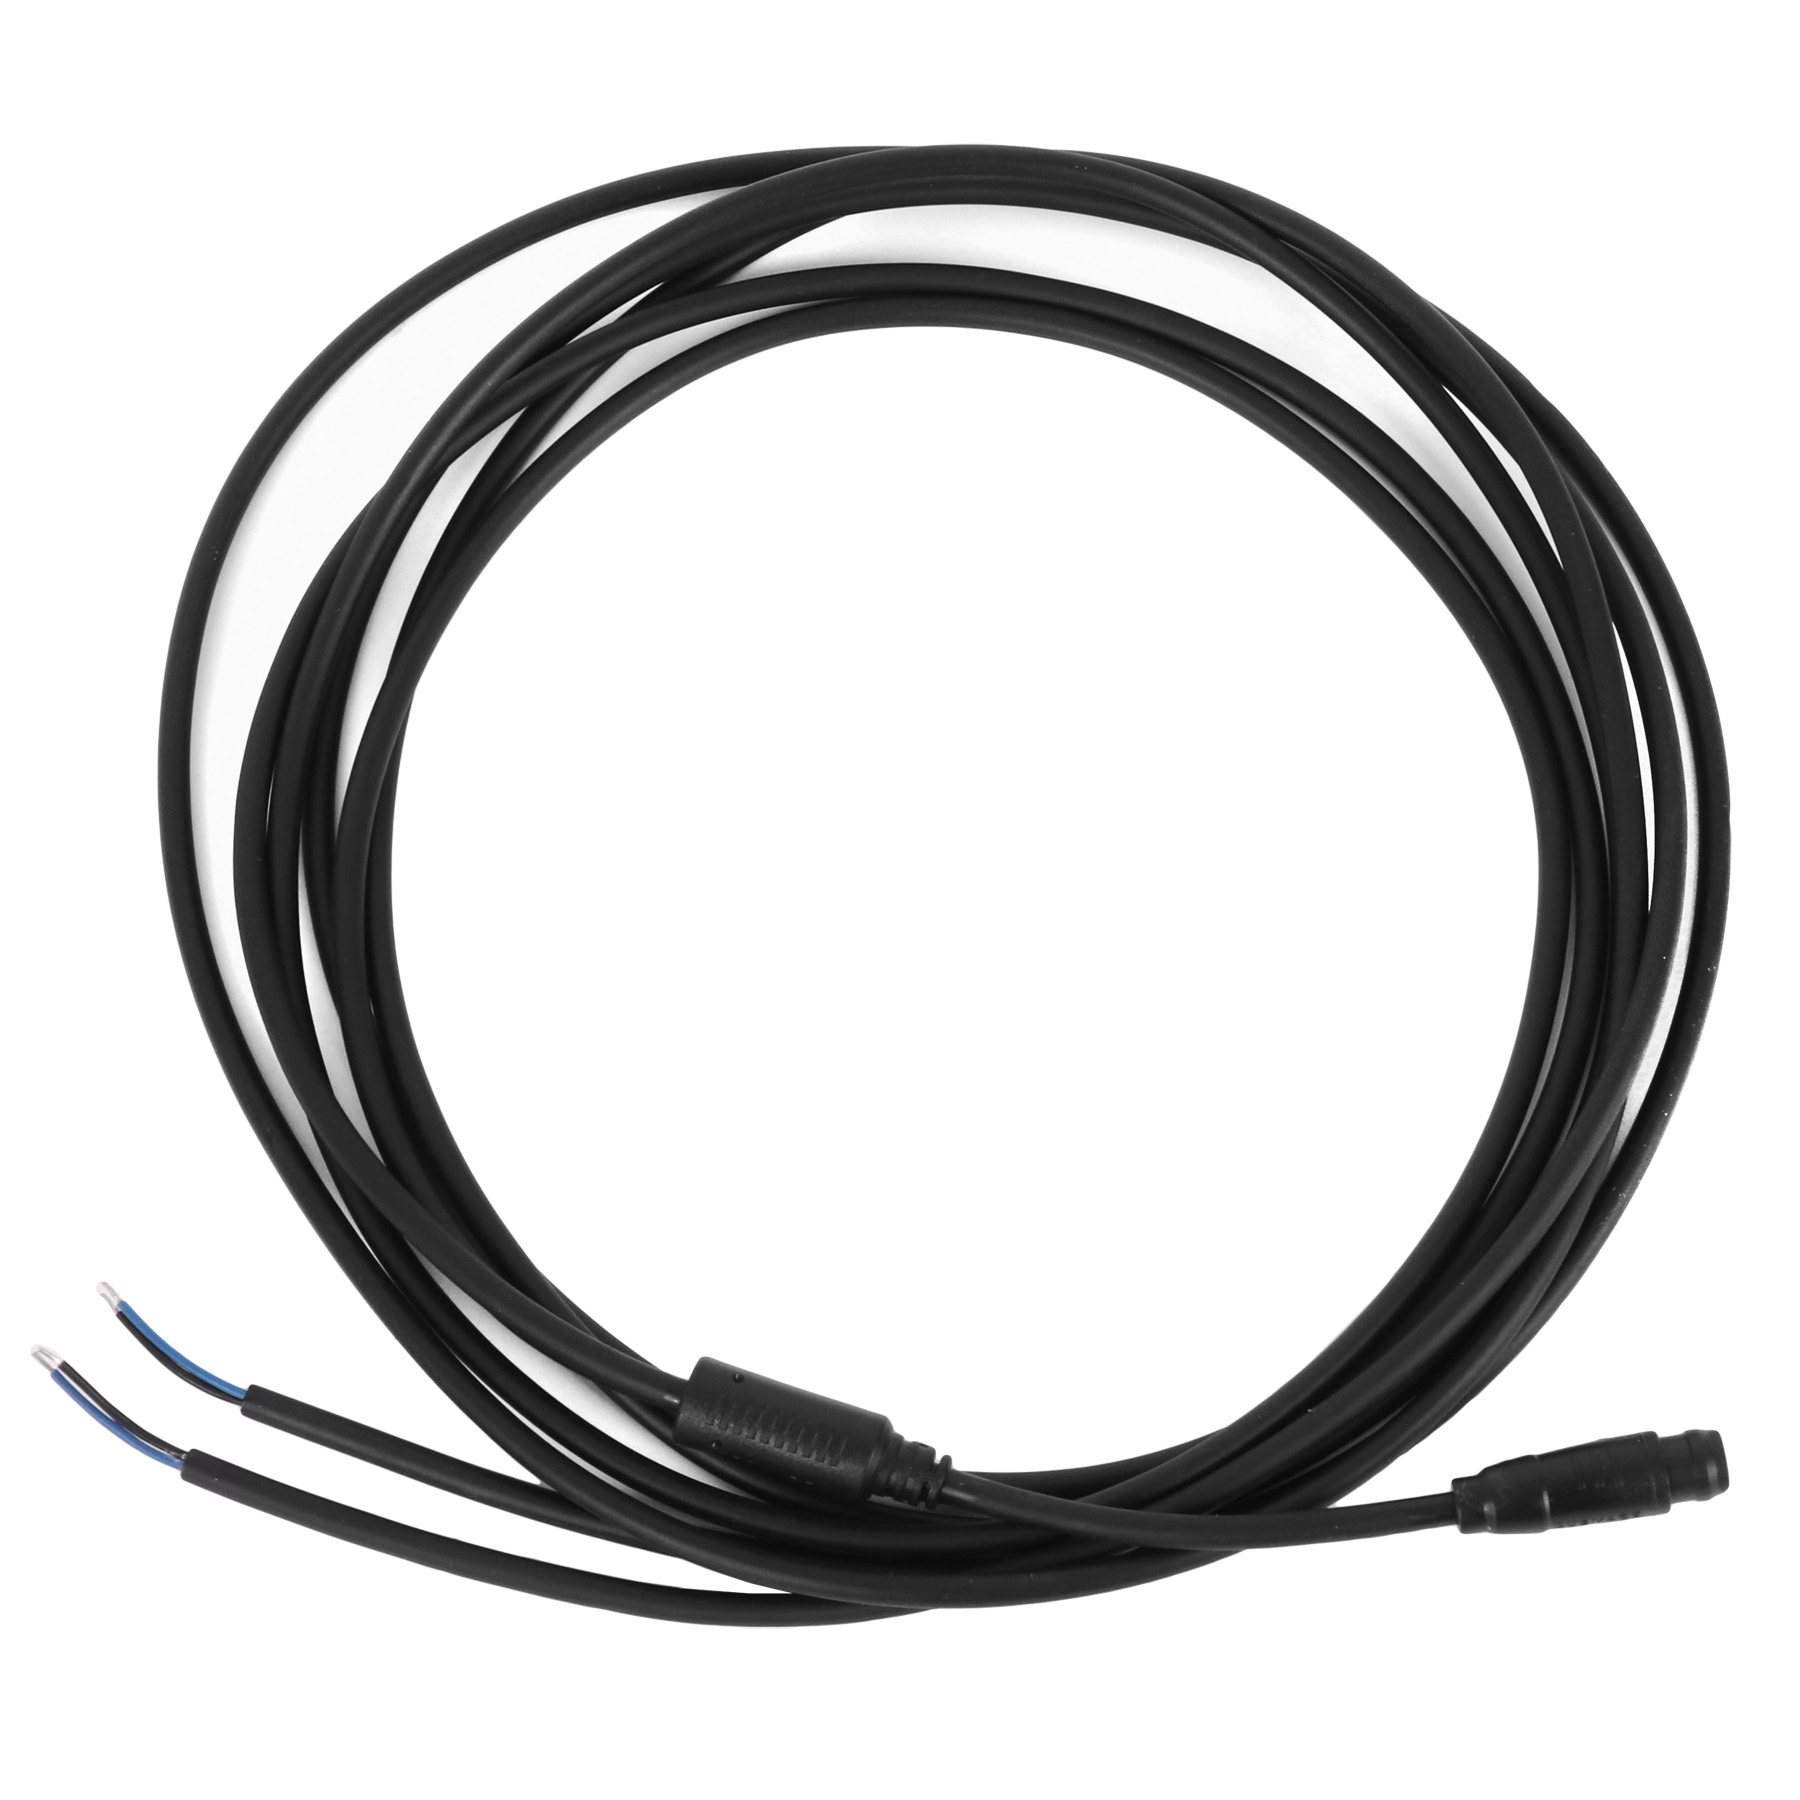 Productfoto van Simplon ebikemotion Light Cable - EBM WIRE L2